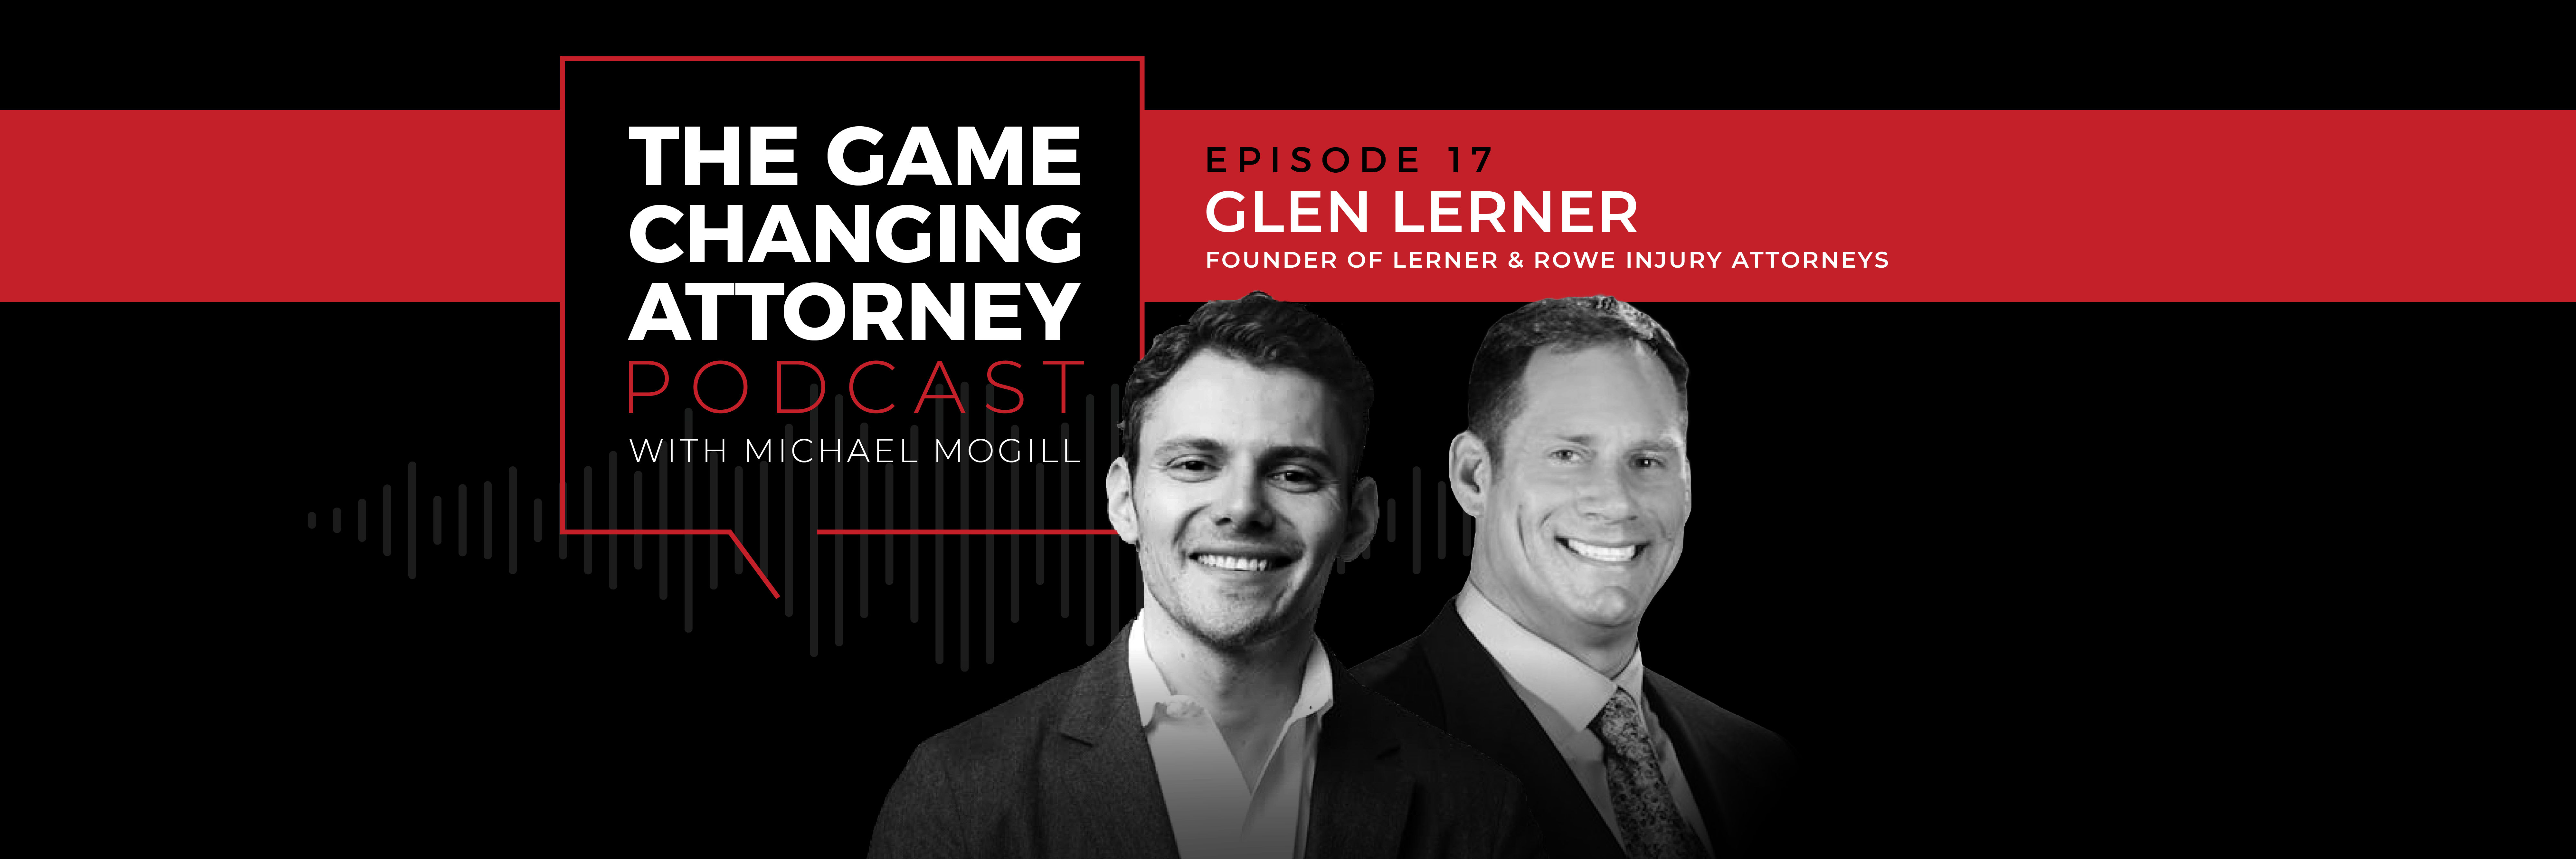 Glen Lerner - The Game Changing Attorney Podcast - Desktop